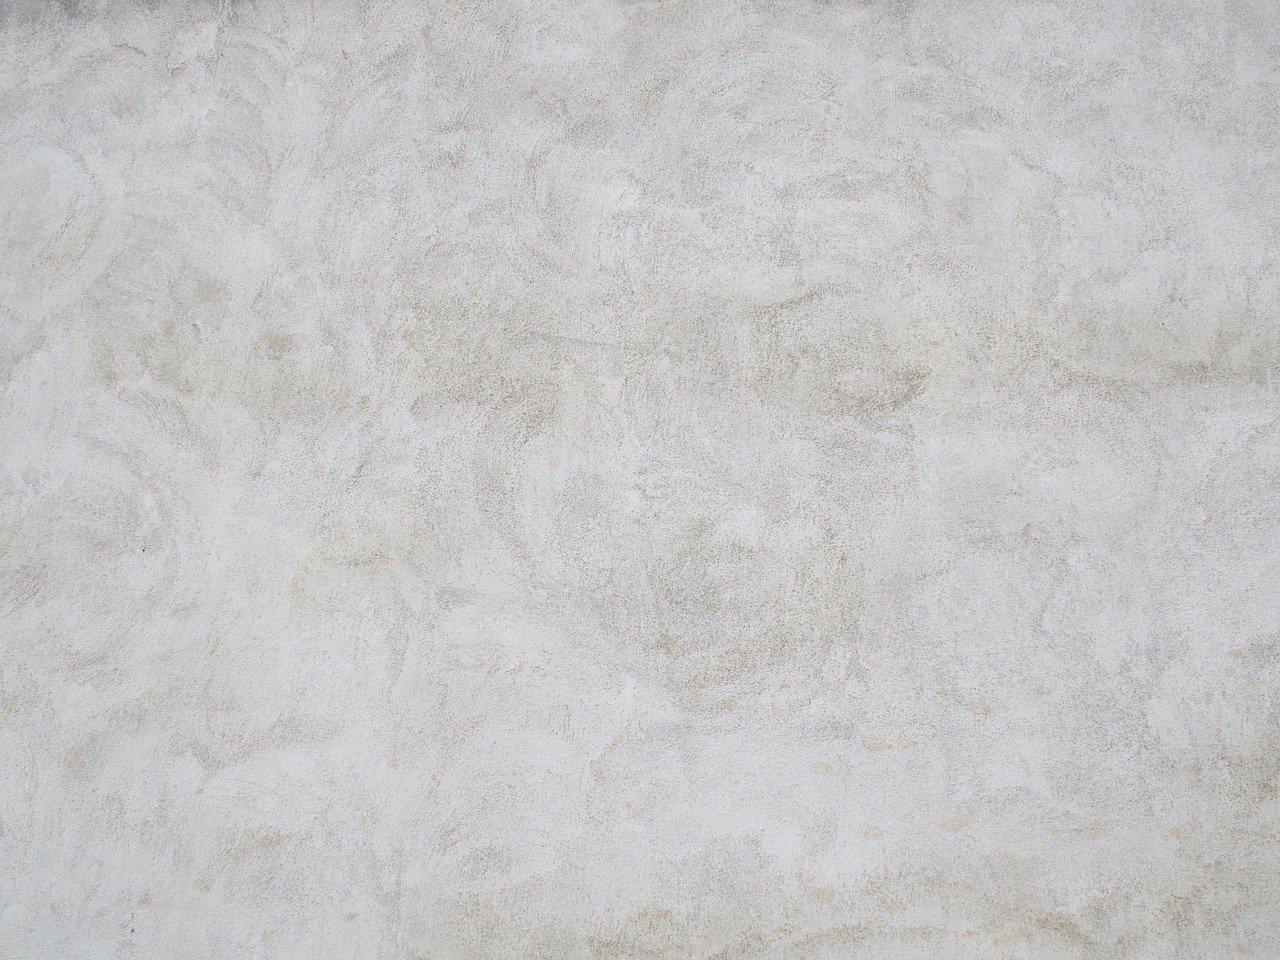 Béton désactivé à Sèvres 92310 | Tarif béton lavé décoratif